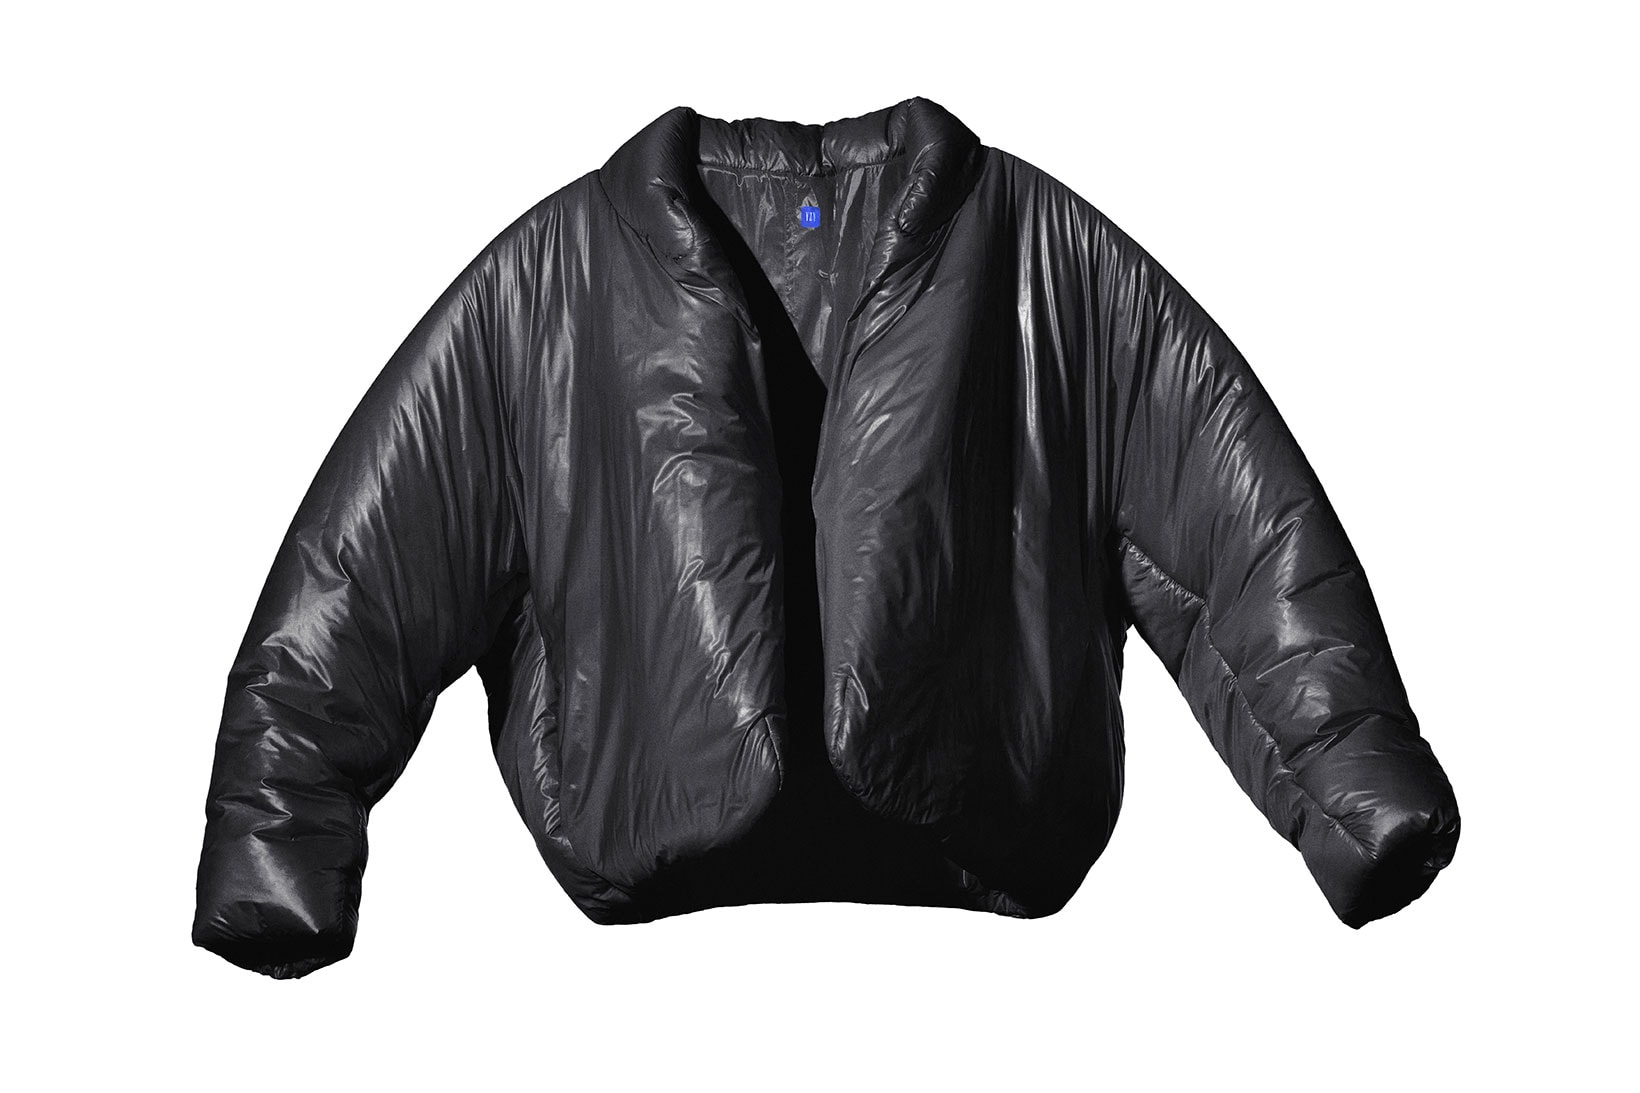 YEEZY Gap Black Round Jacket Kanye West Collaboration Fashion